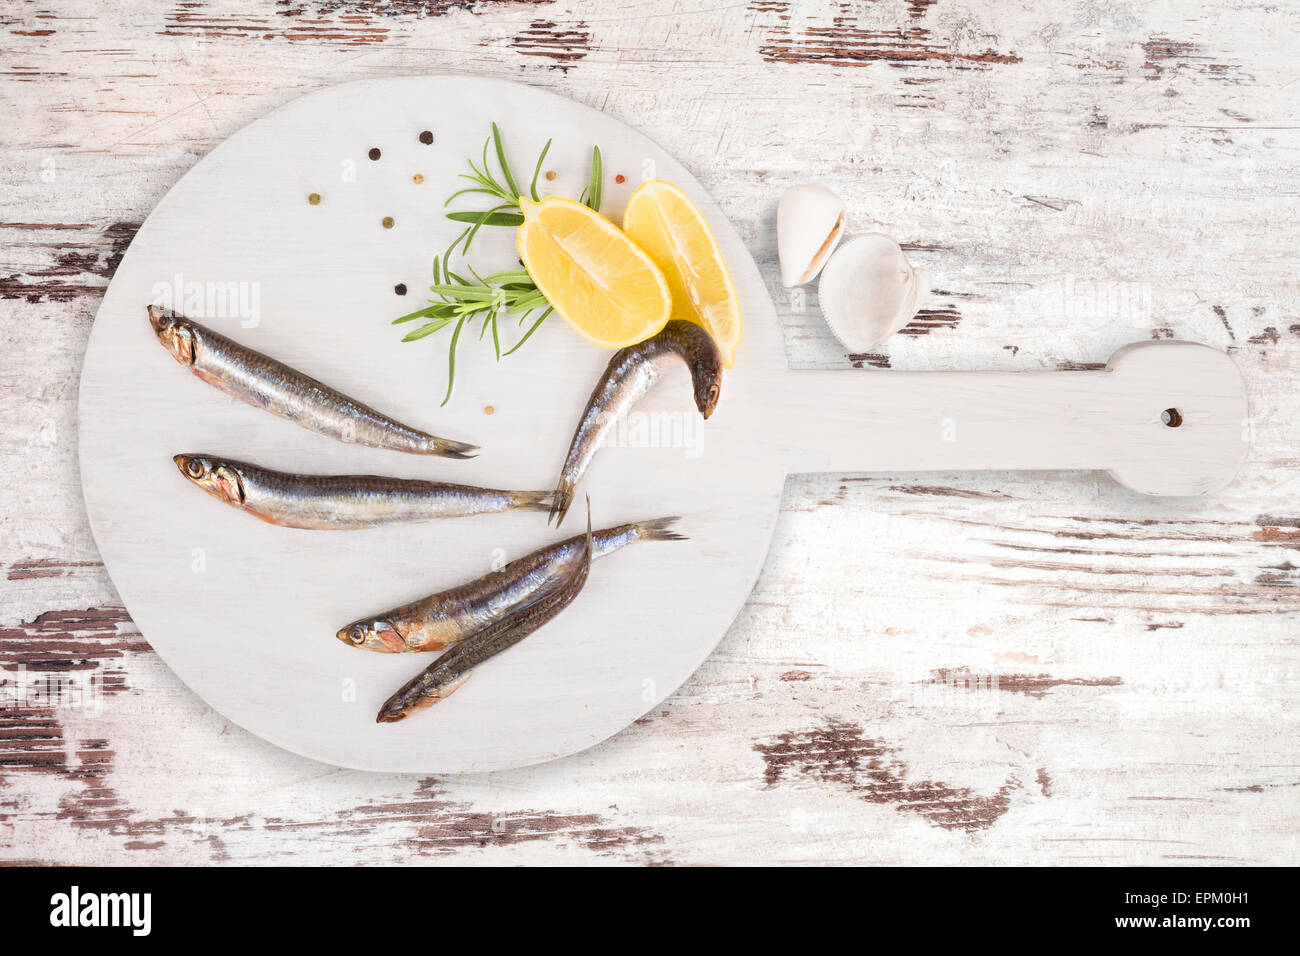 De délicieuses sardines fraîches sur cuisine en bois avec du citron, romarin et poivre colorés sur fond blanc en bois texturé Banque D'Images